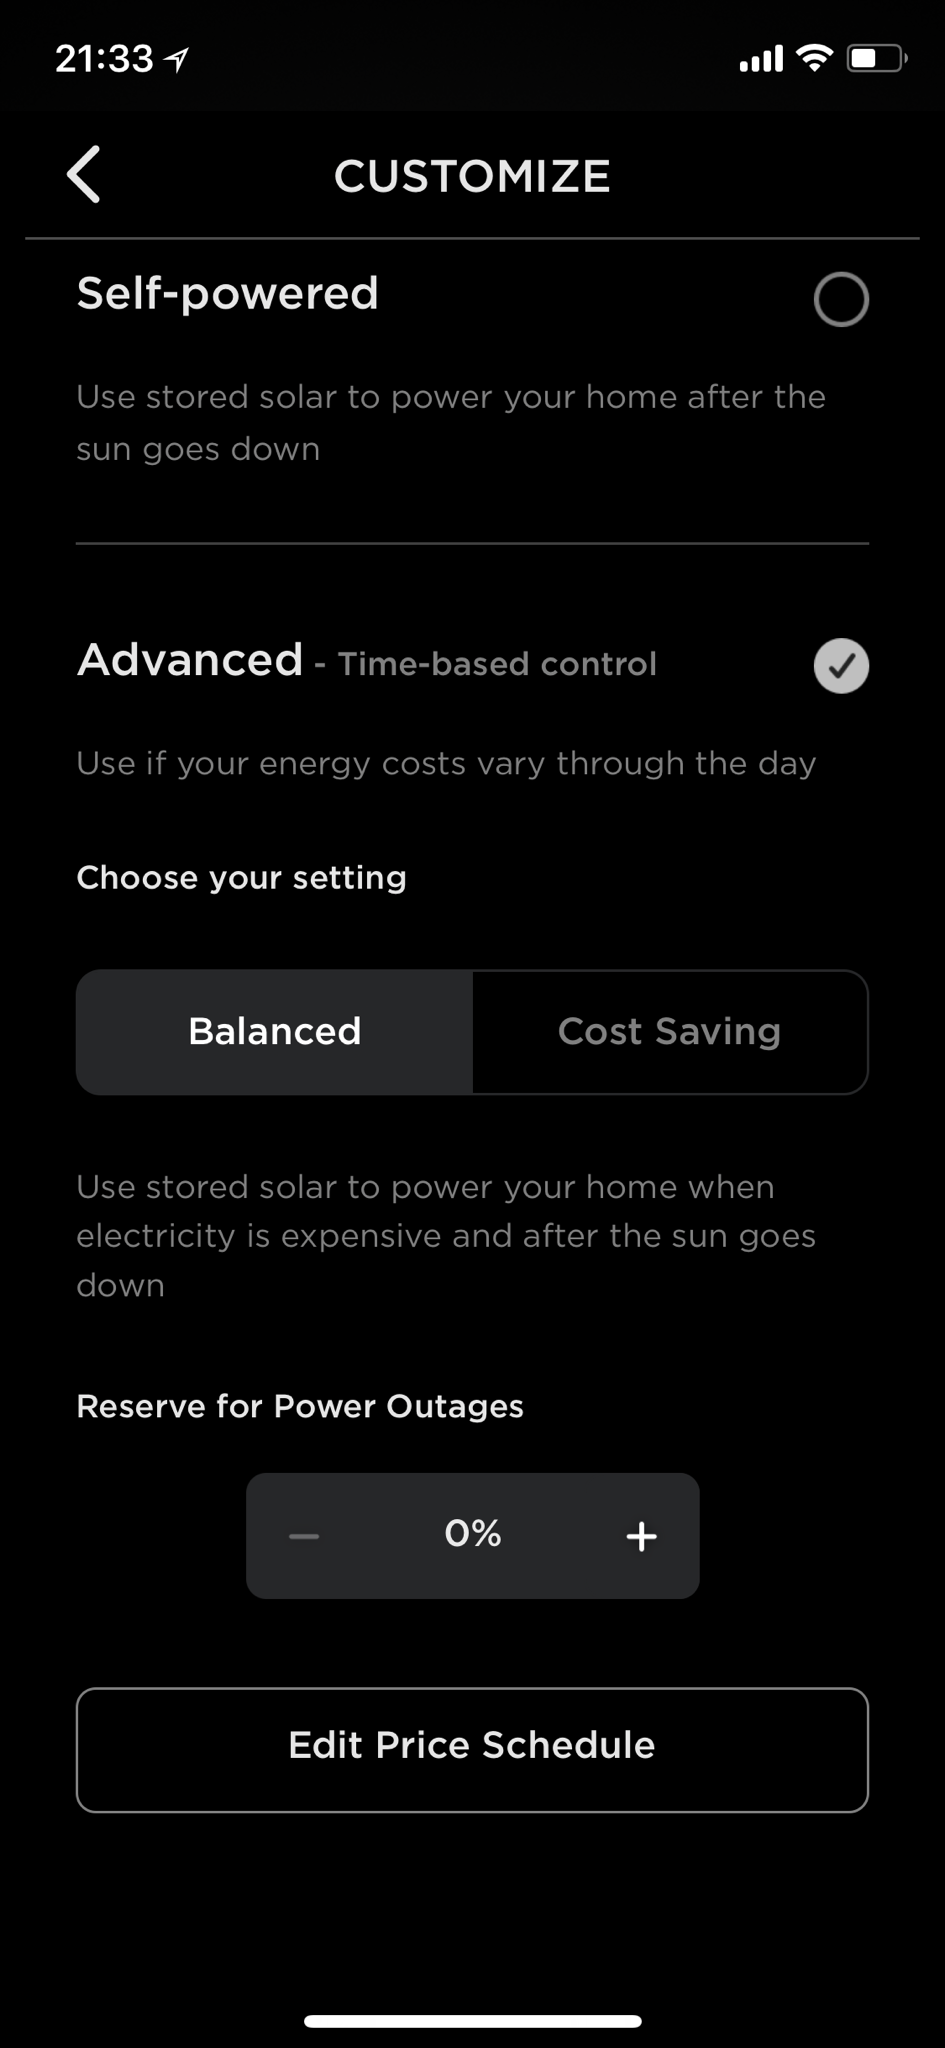 How do I get a free Tesla powerwall?